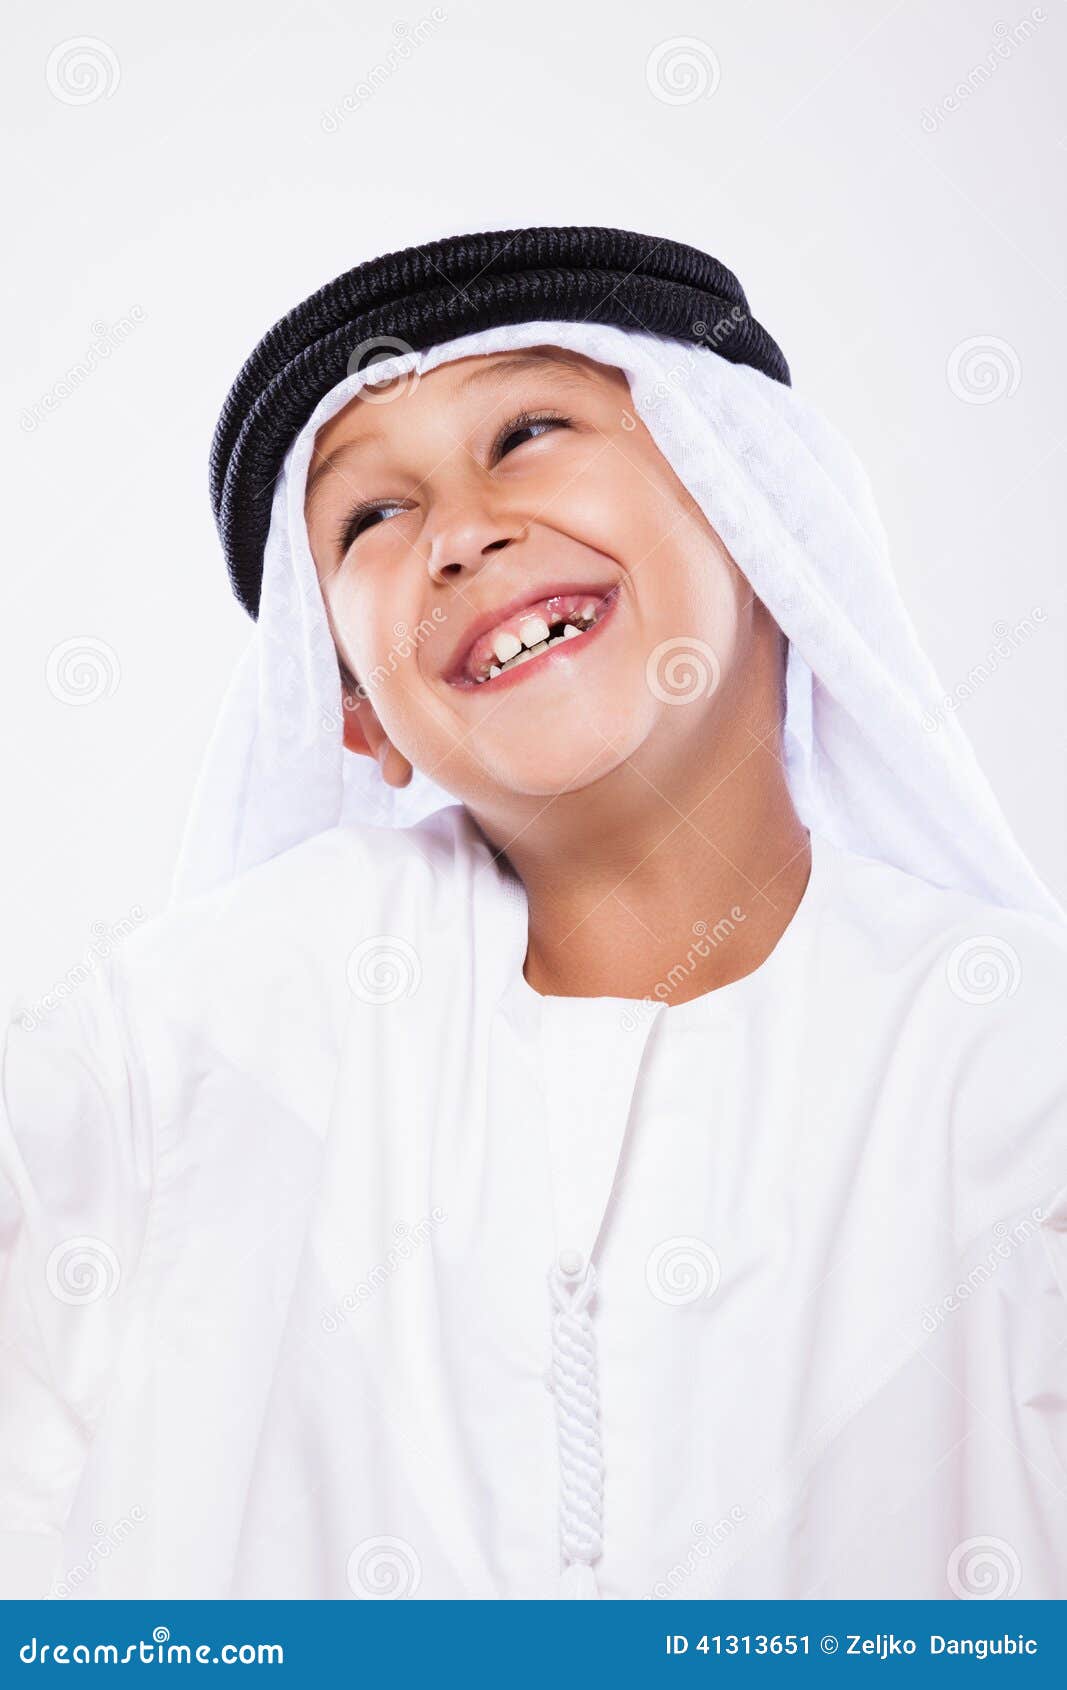 Arab Boy